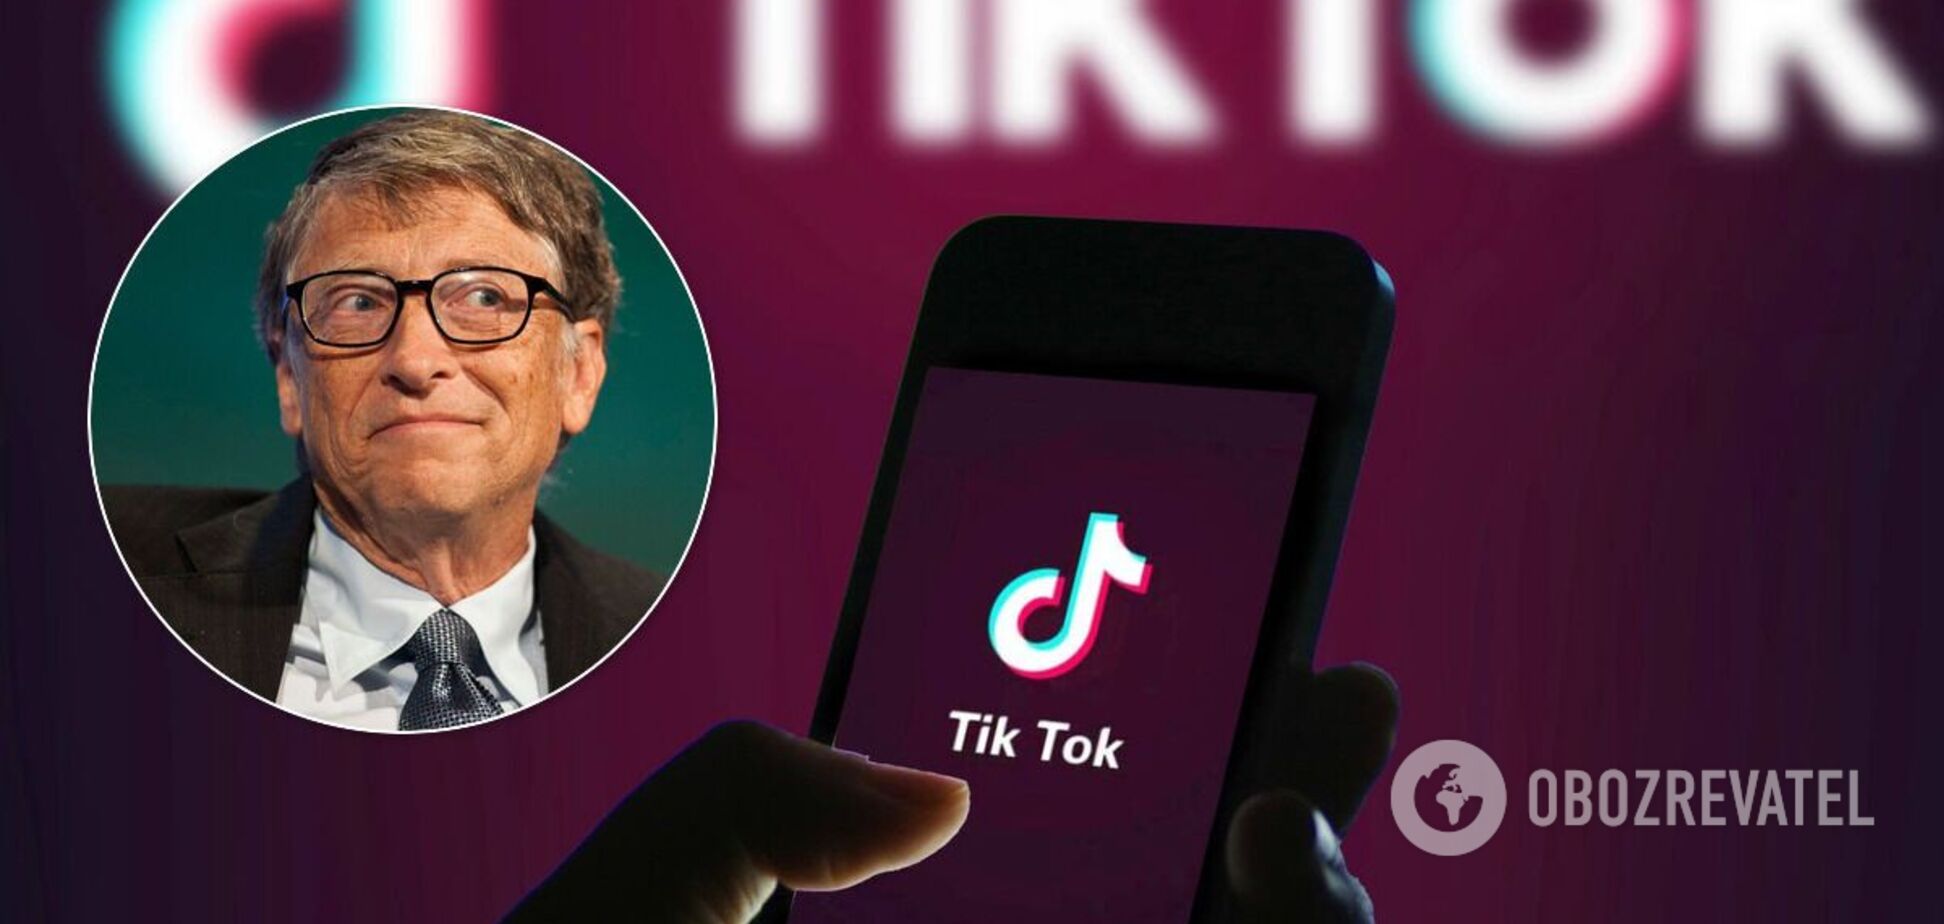 Microsoft має намір купити TikTok і врятувати від закриття в США: ЗМІ дізналися суму угоди